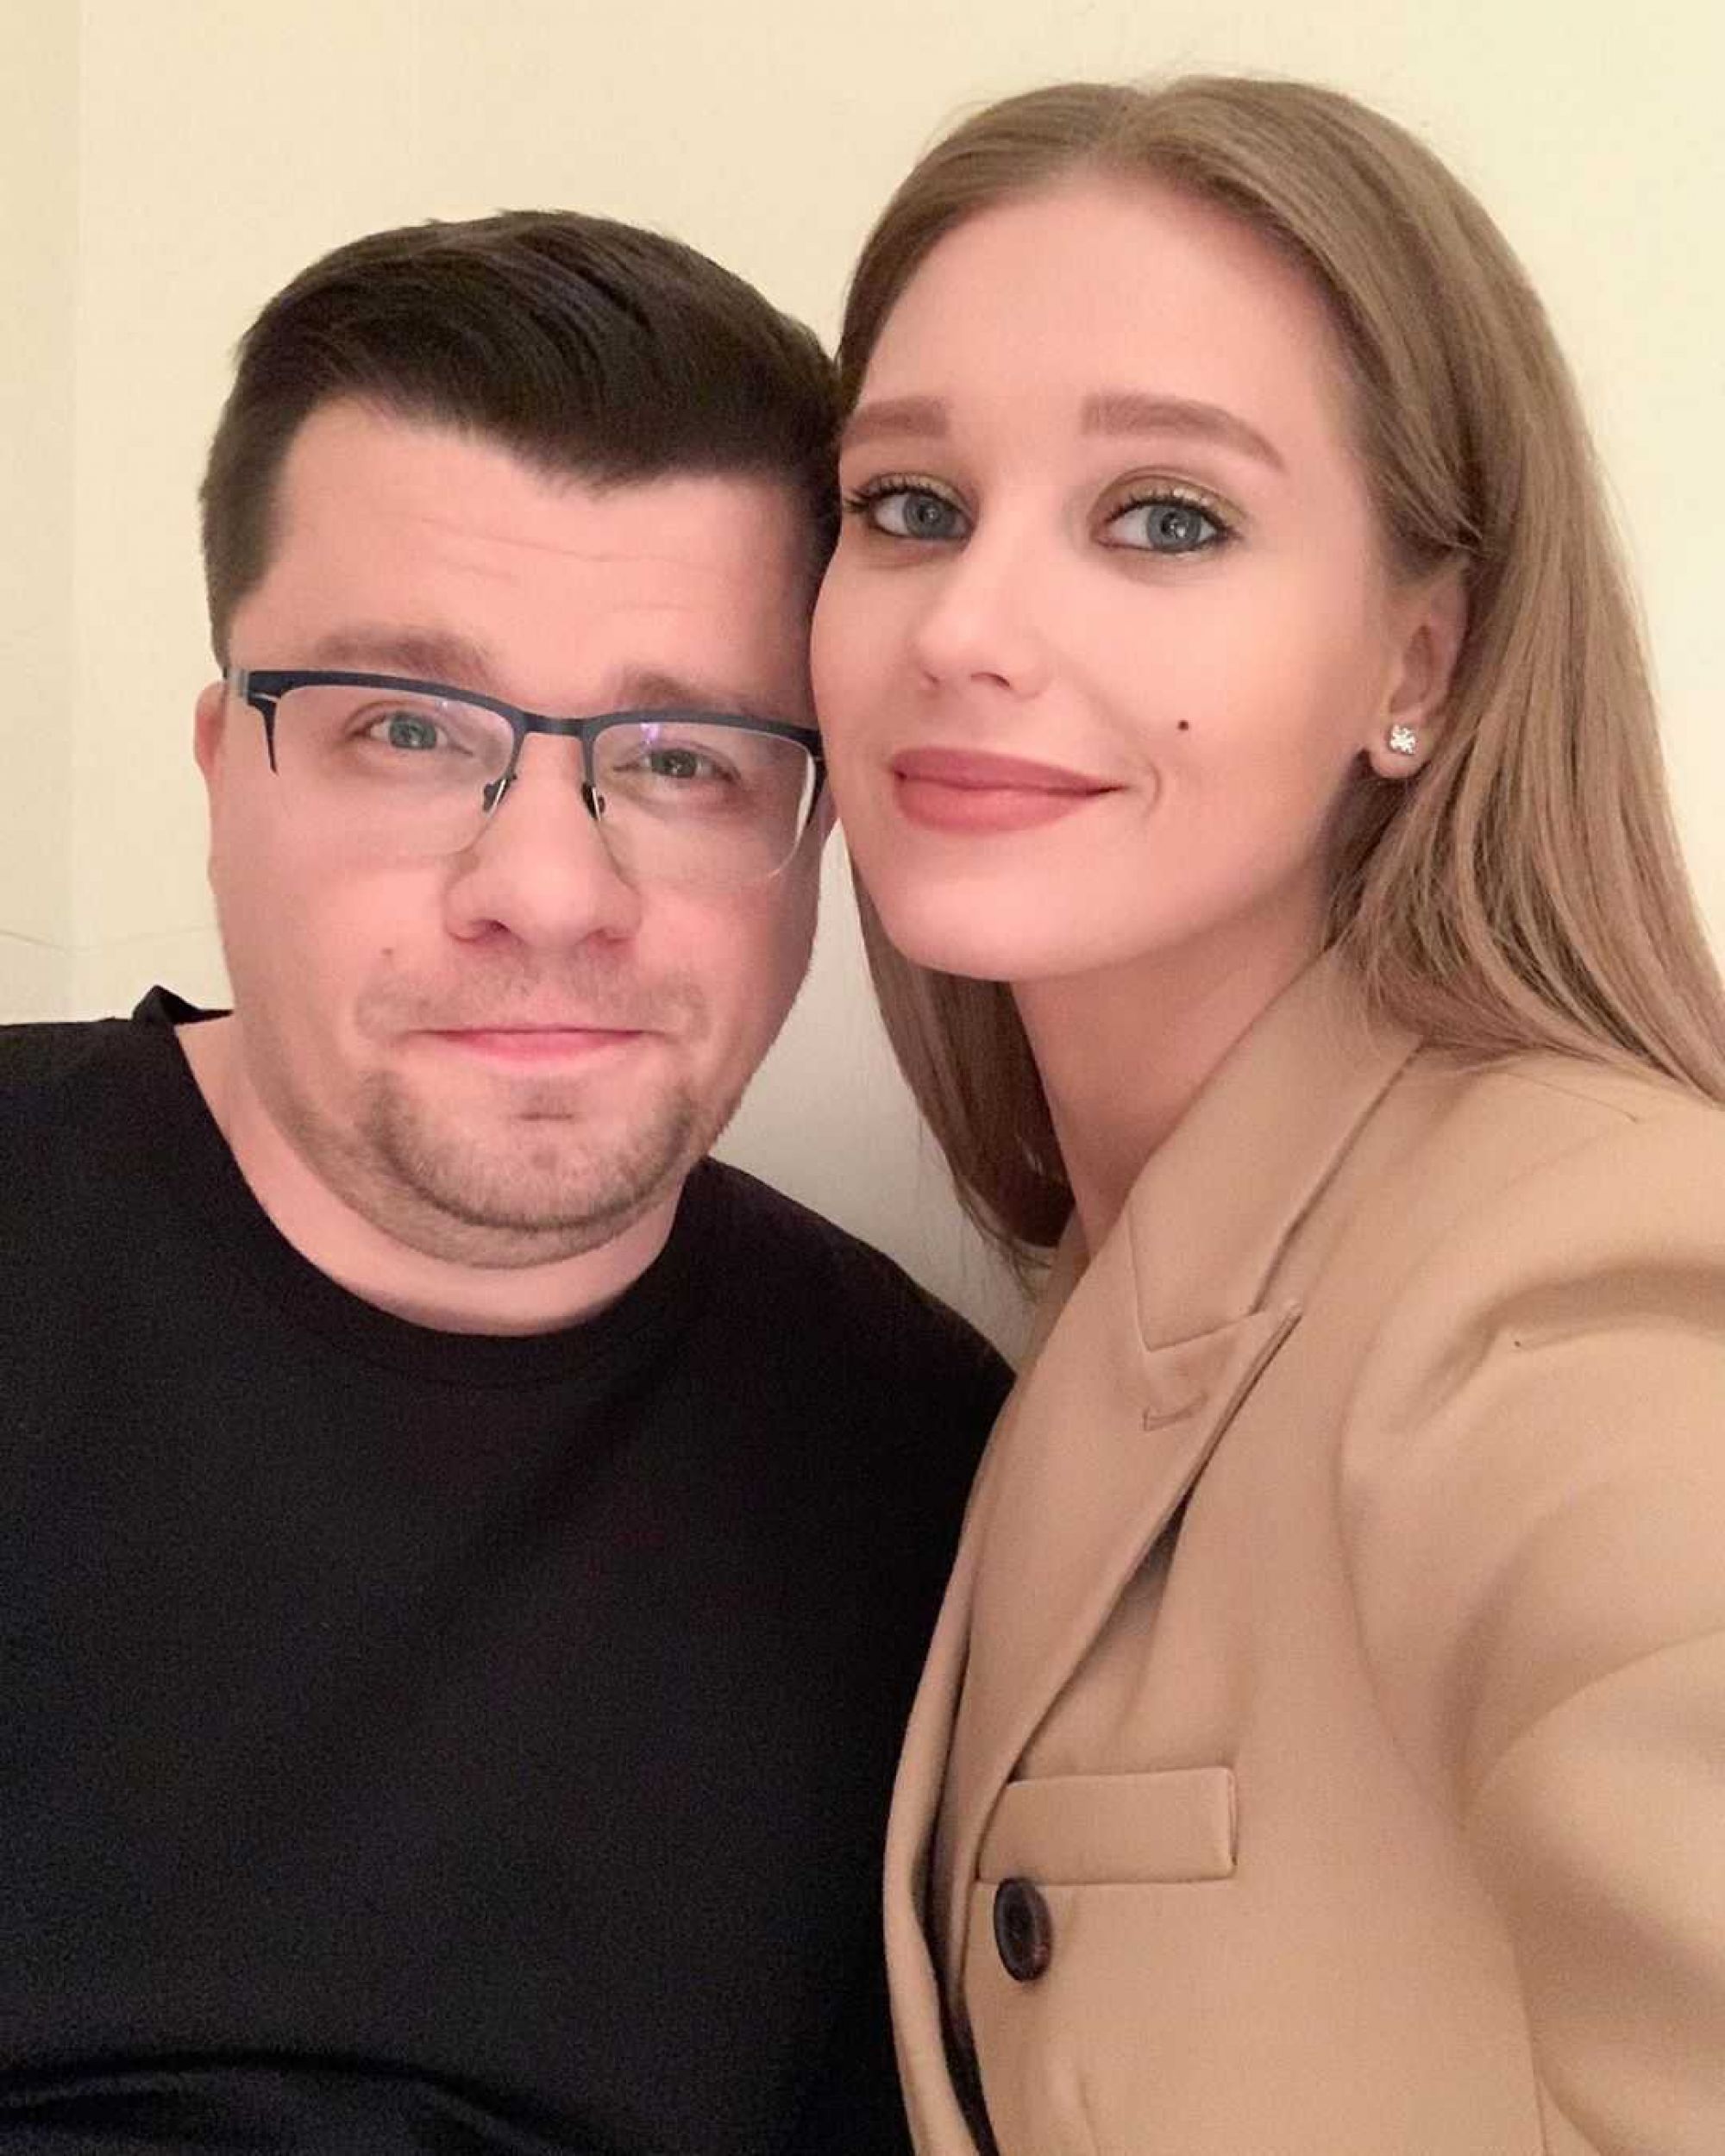 Гарик Харламов высказался о причине развода с Кристиной Асмус по версии СМИ